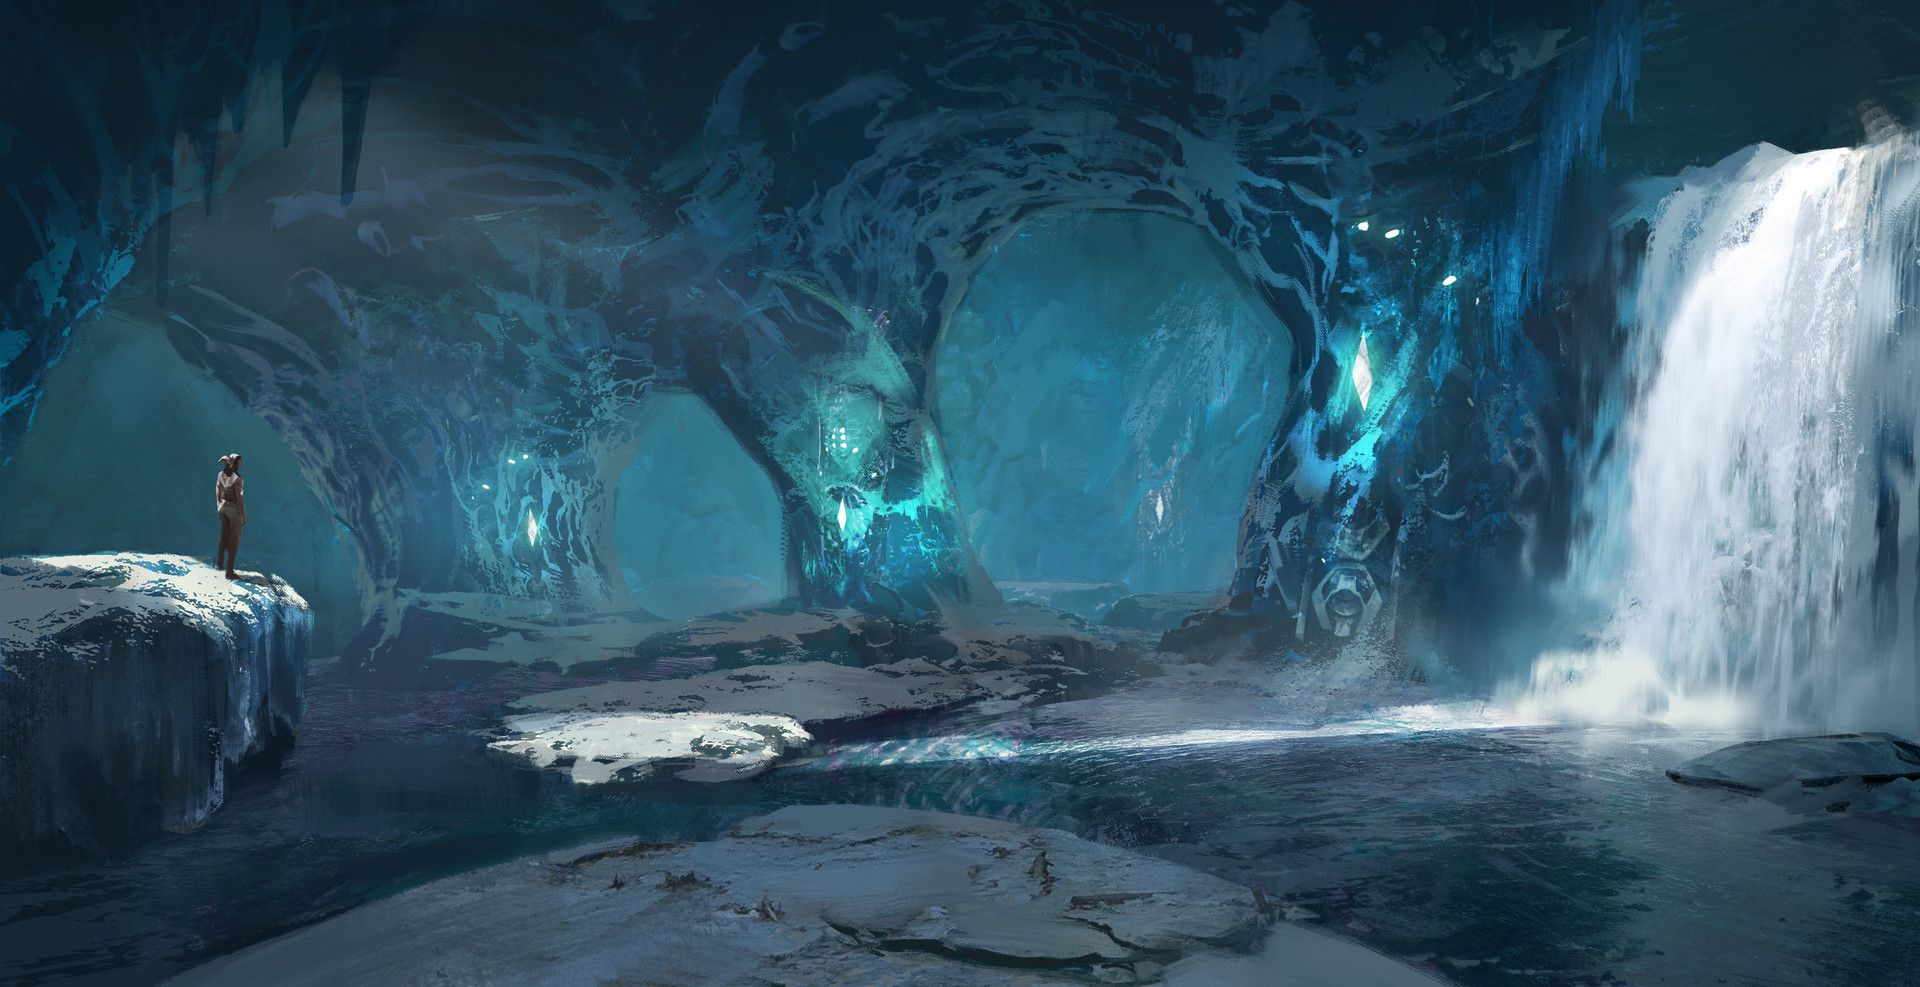 Ледяная пещера арт